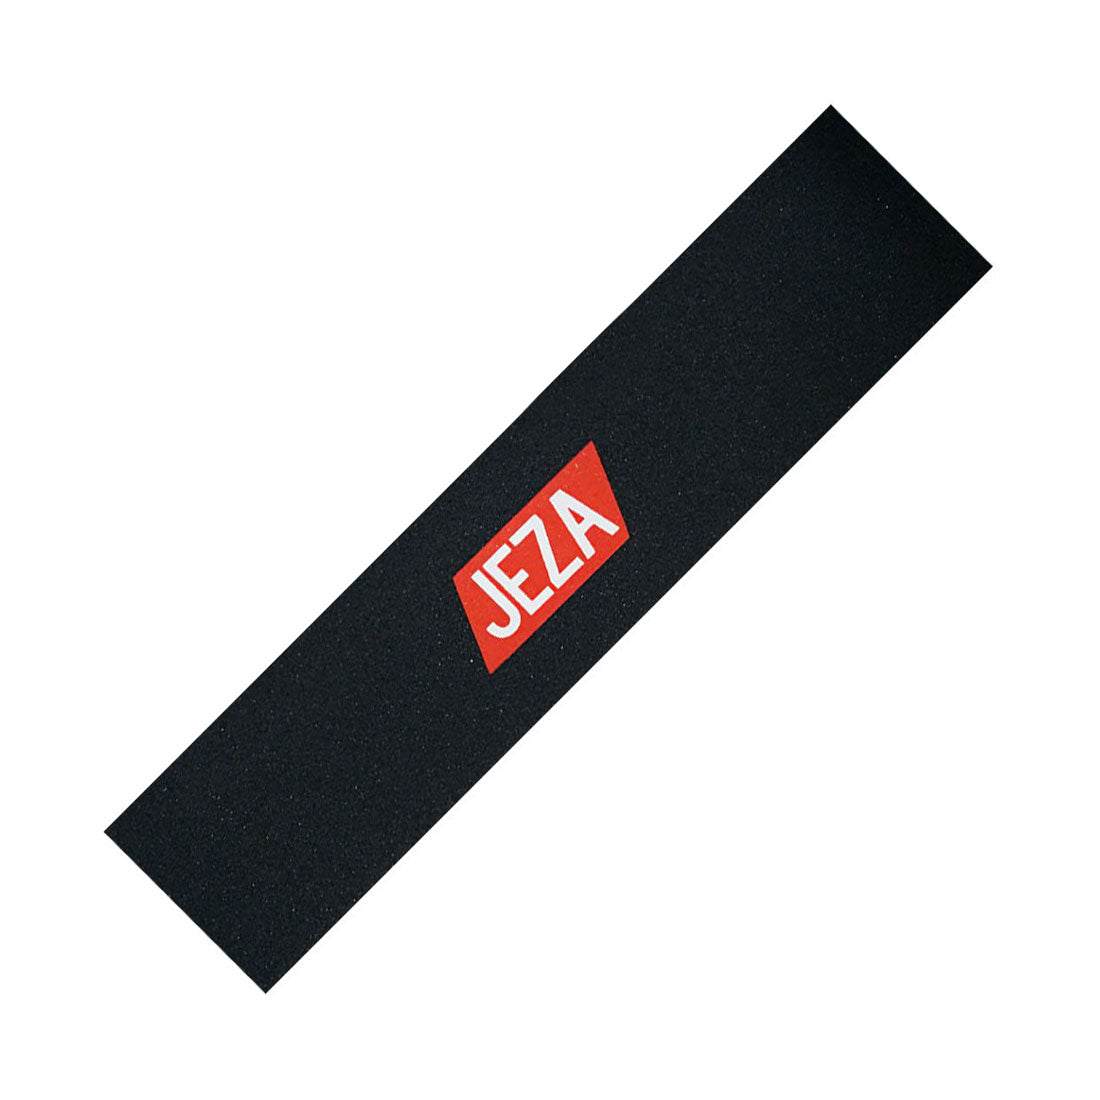 JEZA JF Logo Griptape - Black/Red Griptape